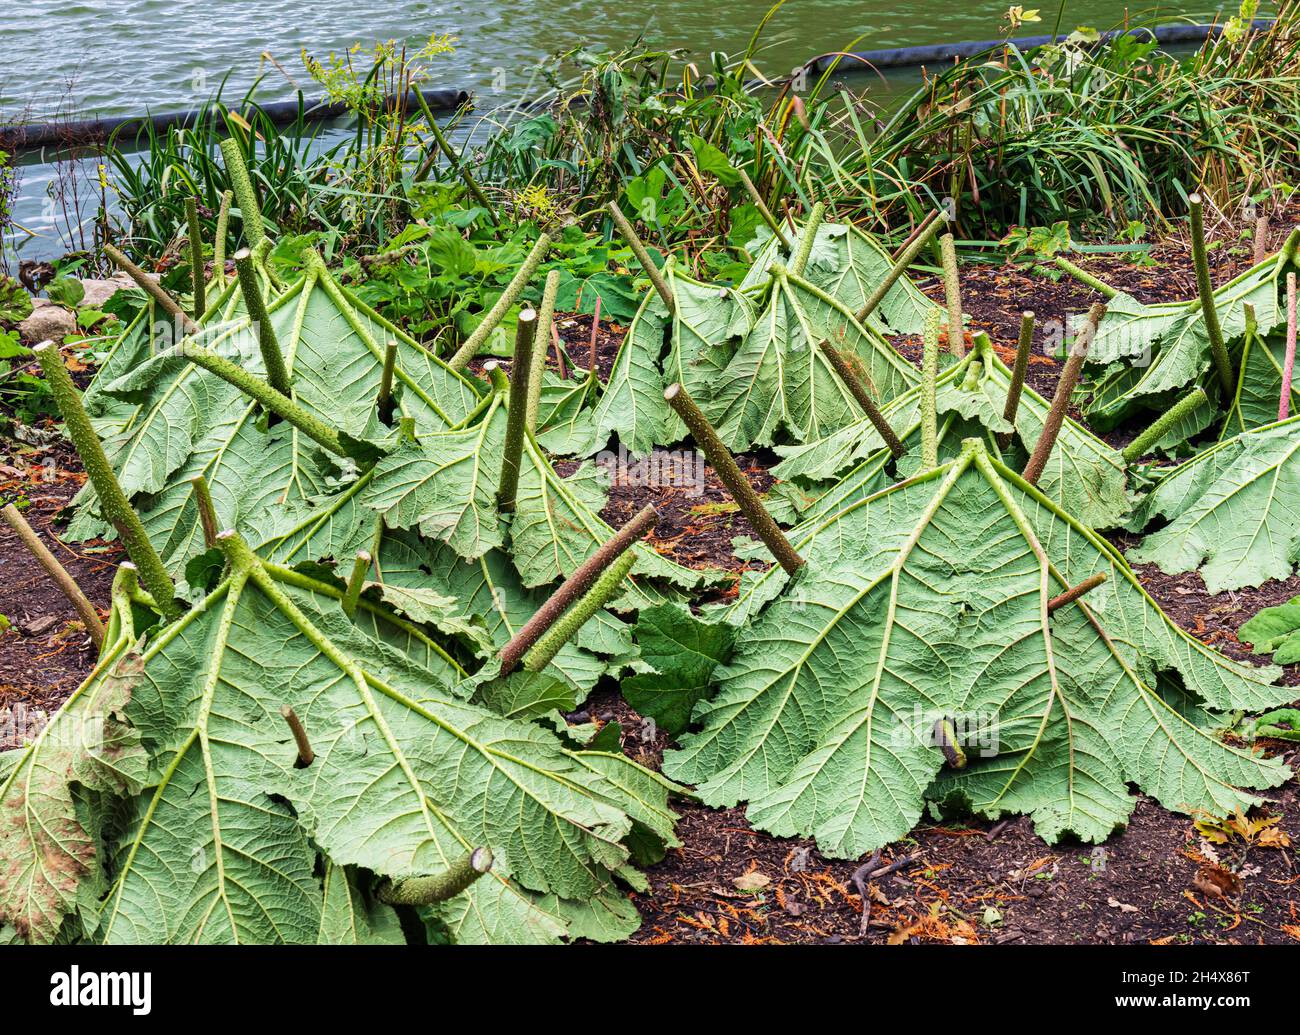 Gunnera manicata, conocida como ruibarbo gigante brasileño. Con hojas giradas hacia arriba utilizadas para la protección contra las heladas invernales. Foto de stock